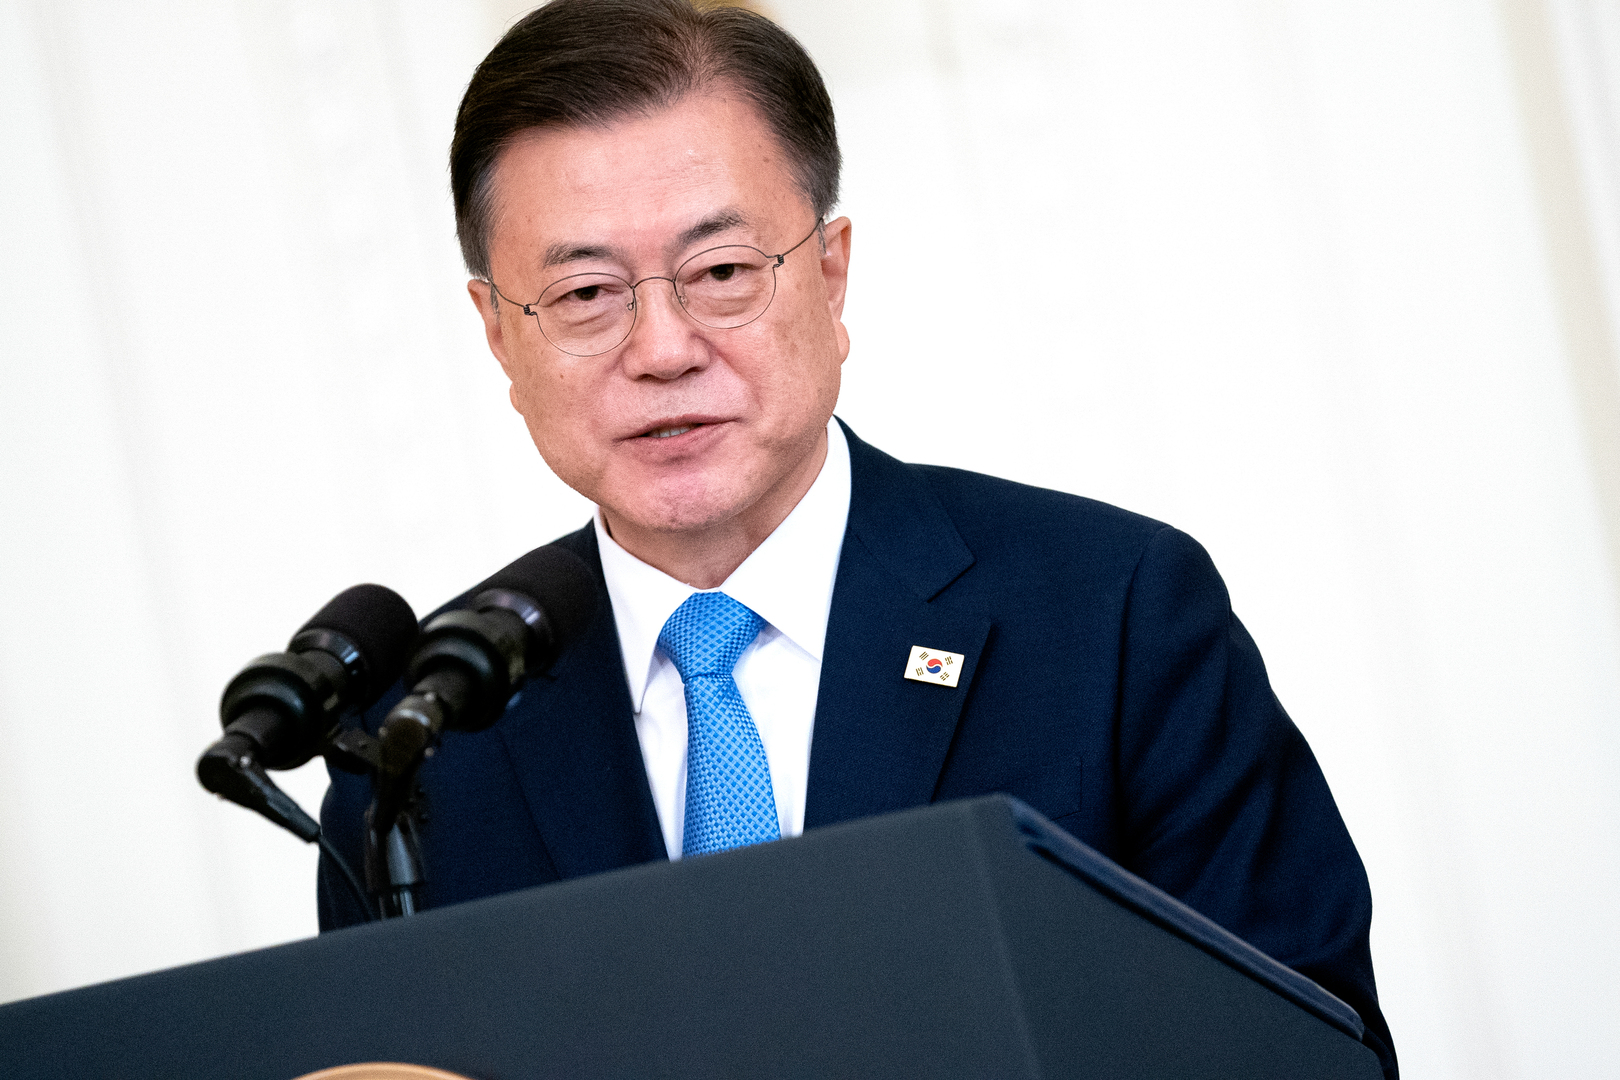 رئيس كوريا الجنوبية يعبر عن قلقه من استمرار بيونغ يانغ في اختبار الأسلحة الجديدة